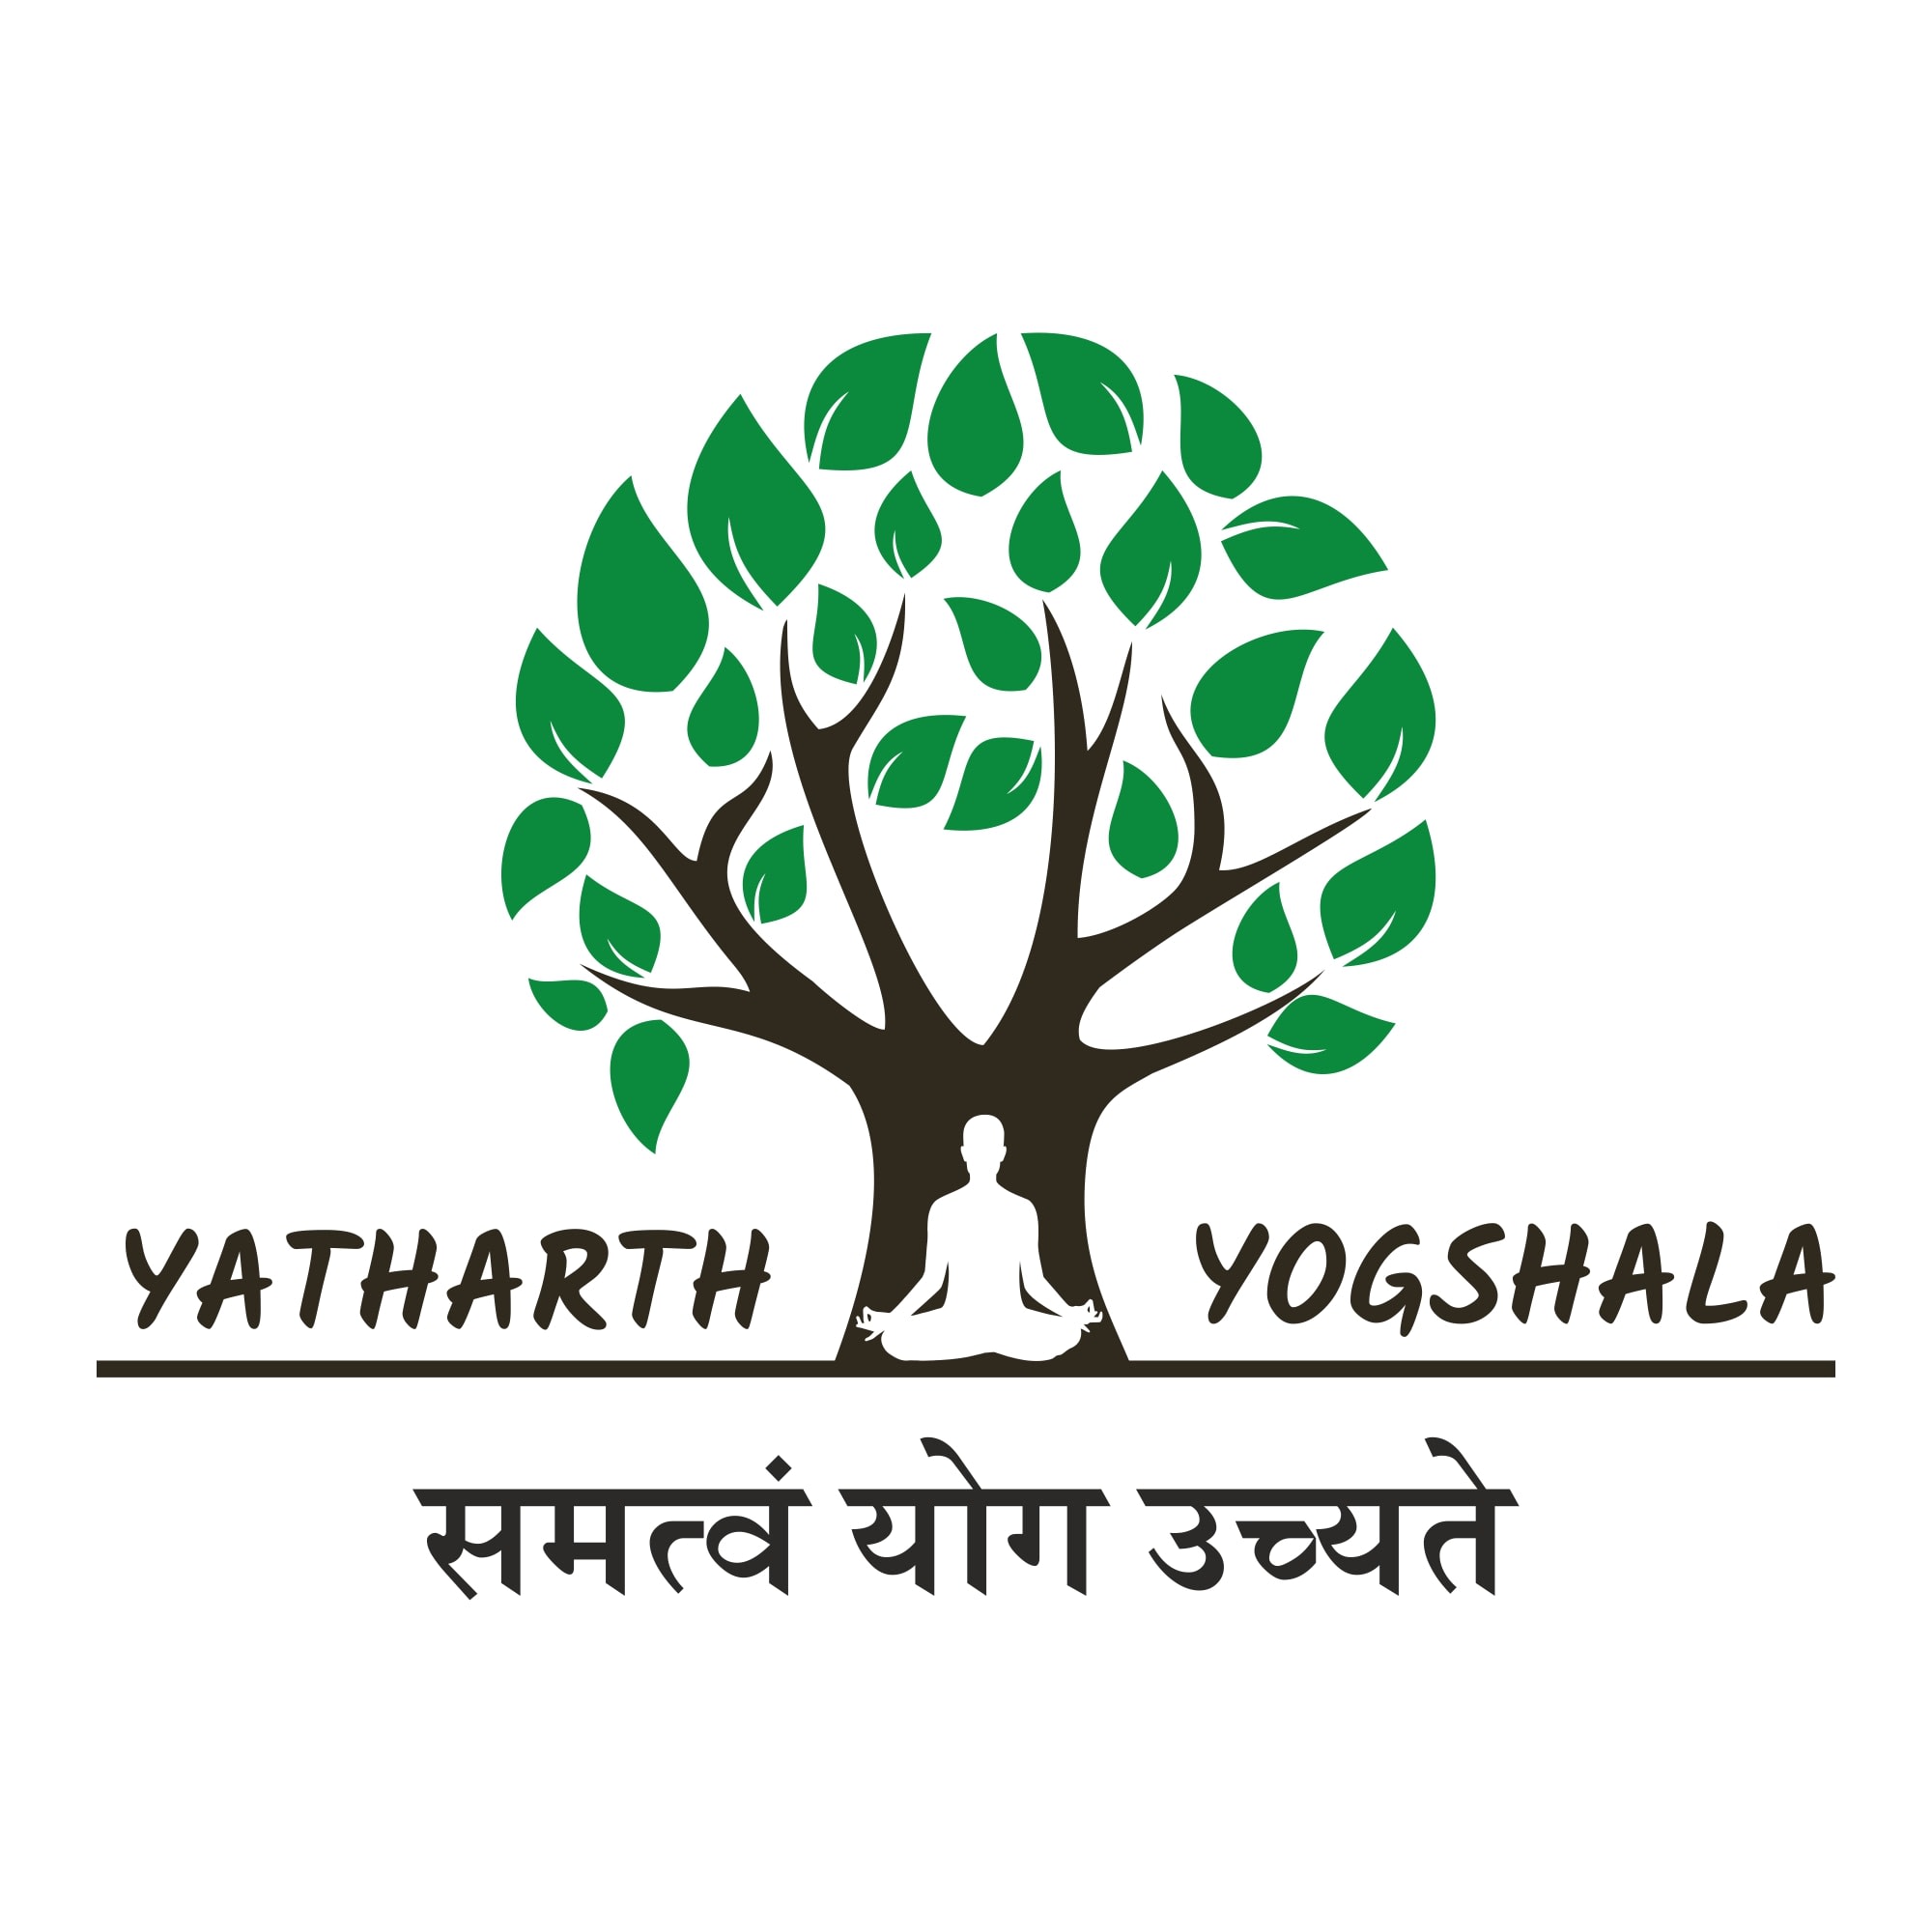 Yhathath Yoga Shala